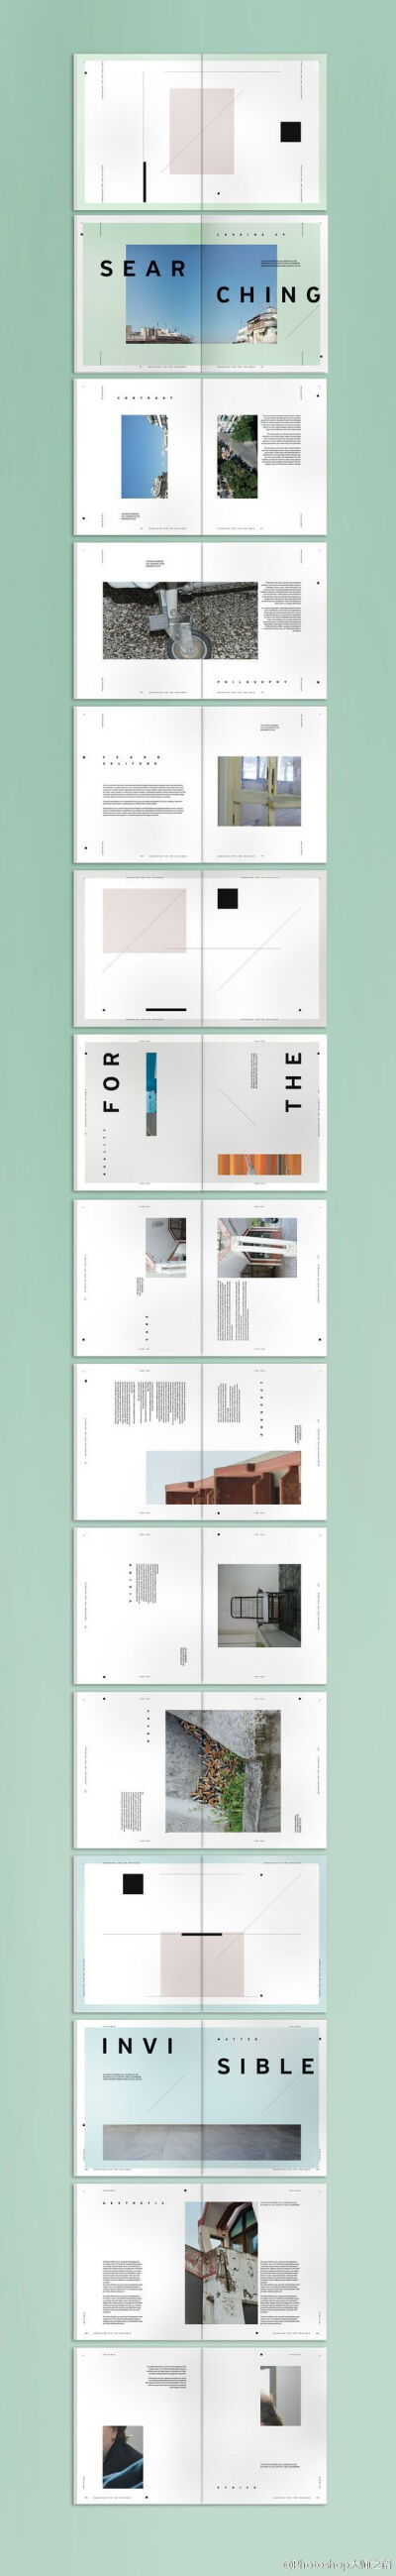 #俺们都是设计师# 一组简洁实用的画册版式设计，没灵感的时候可以试试这些！转给需要的伙伴们吧~ （cr：@Photoshop大师 ）